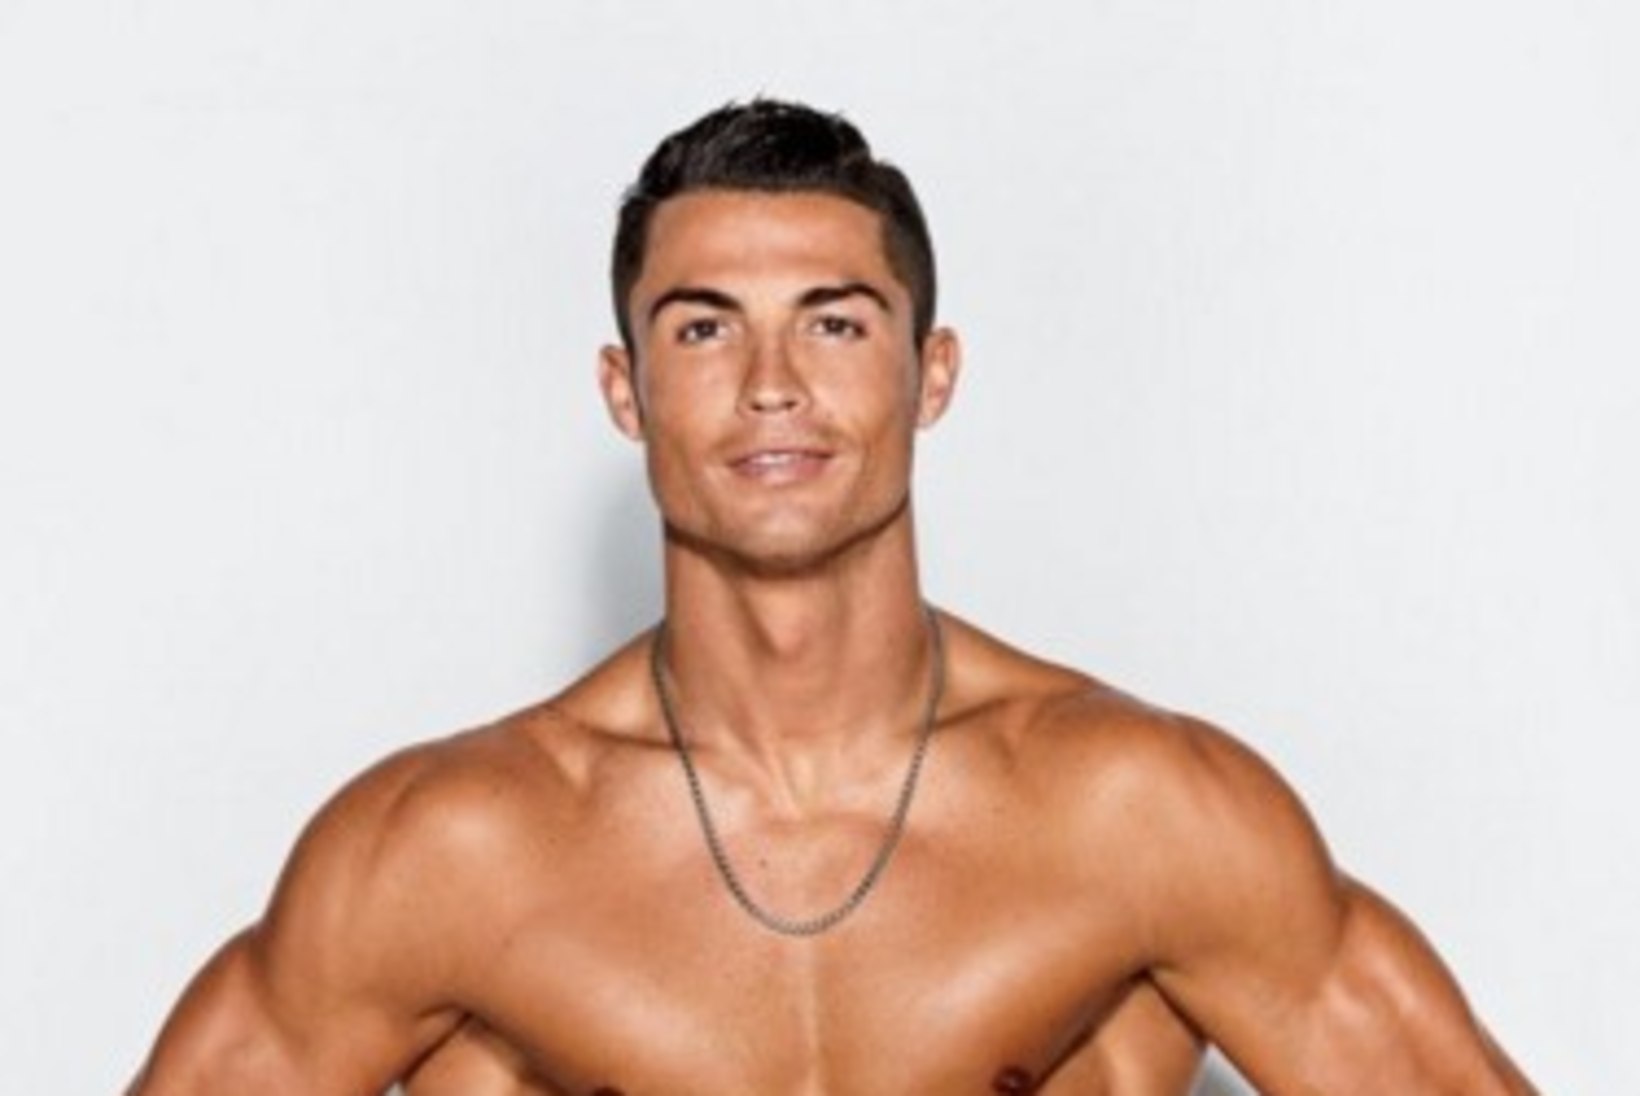 MIDAGI NAISTELE! FOTOD | Kas leidub naist, kes ei sooviks Cristiano Ronaldo võimsatelt kõhulihastelt näiteks vahukoort limpsida?